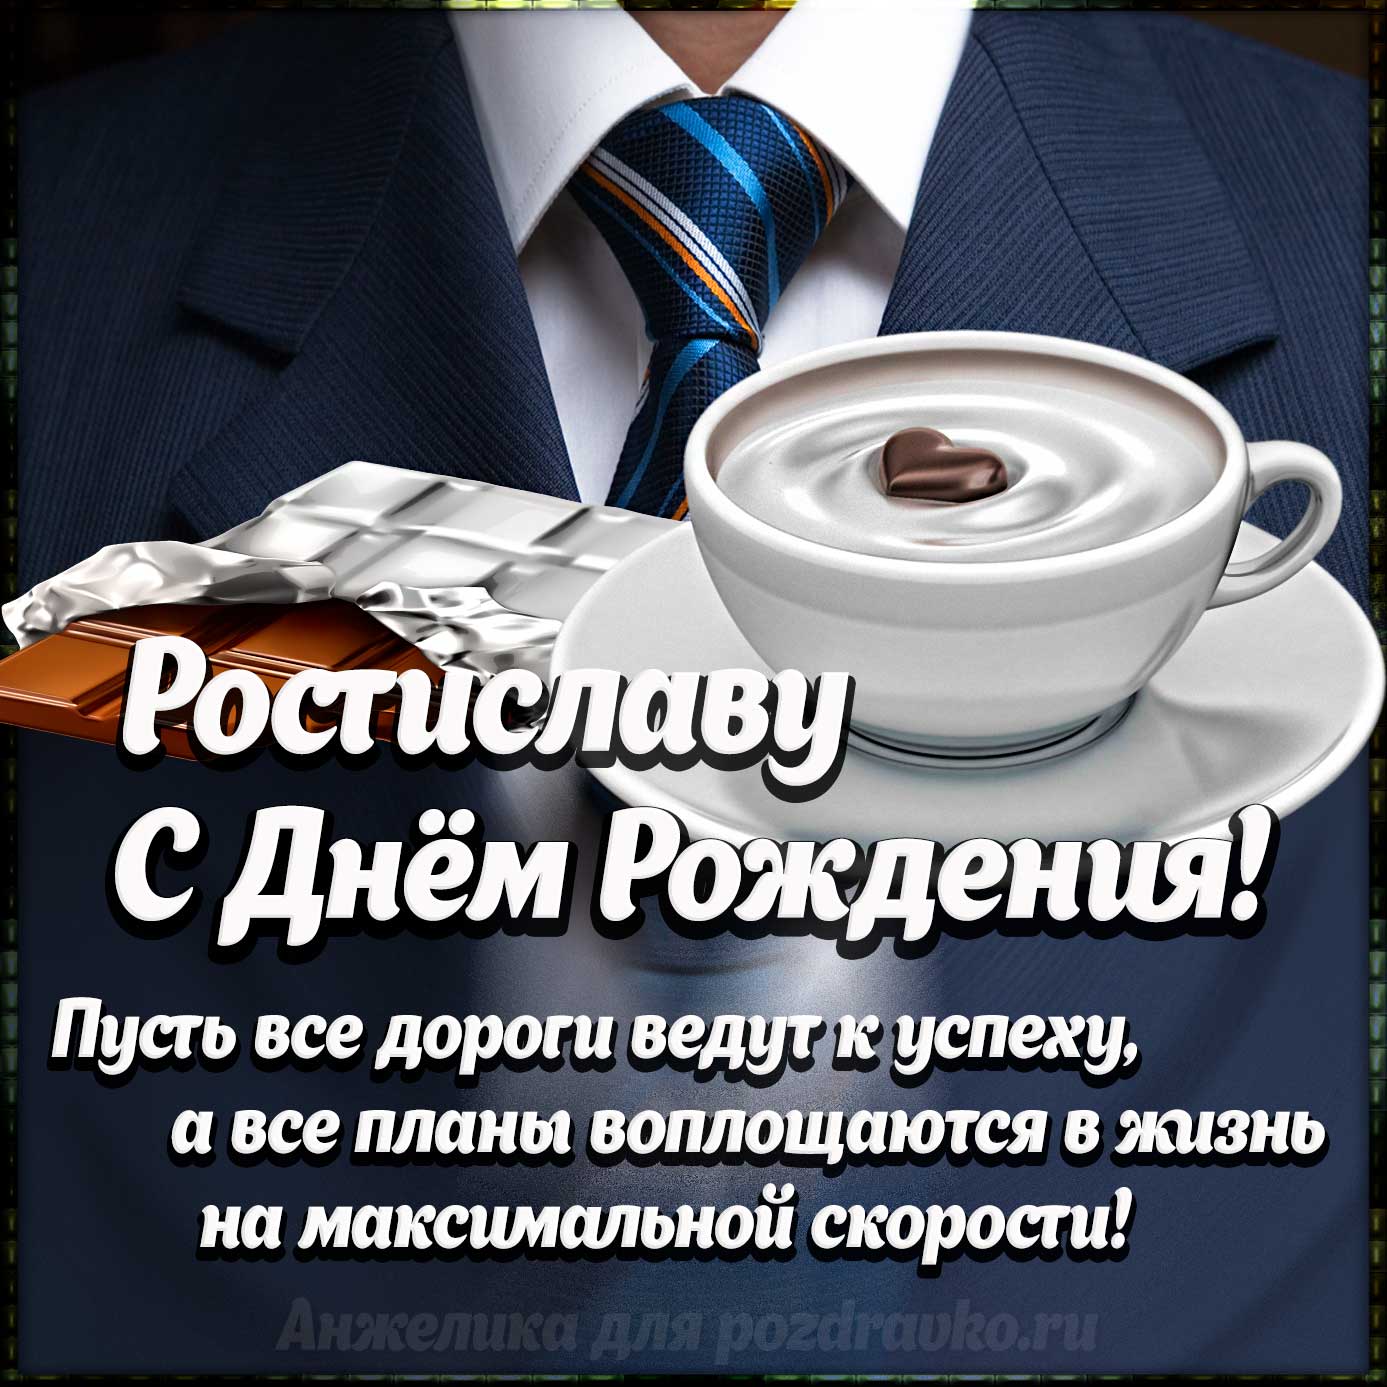 Открытка - Ростиславу с Днем Рождения с галстуком, кофе и пожеланием. Скачать бесплатно или отправить картинку.